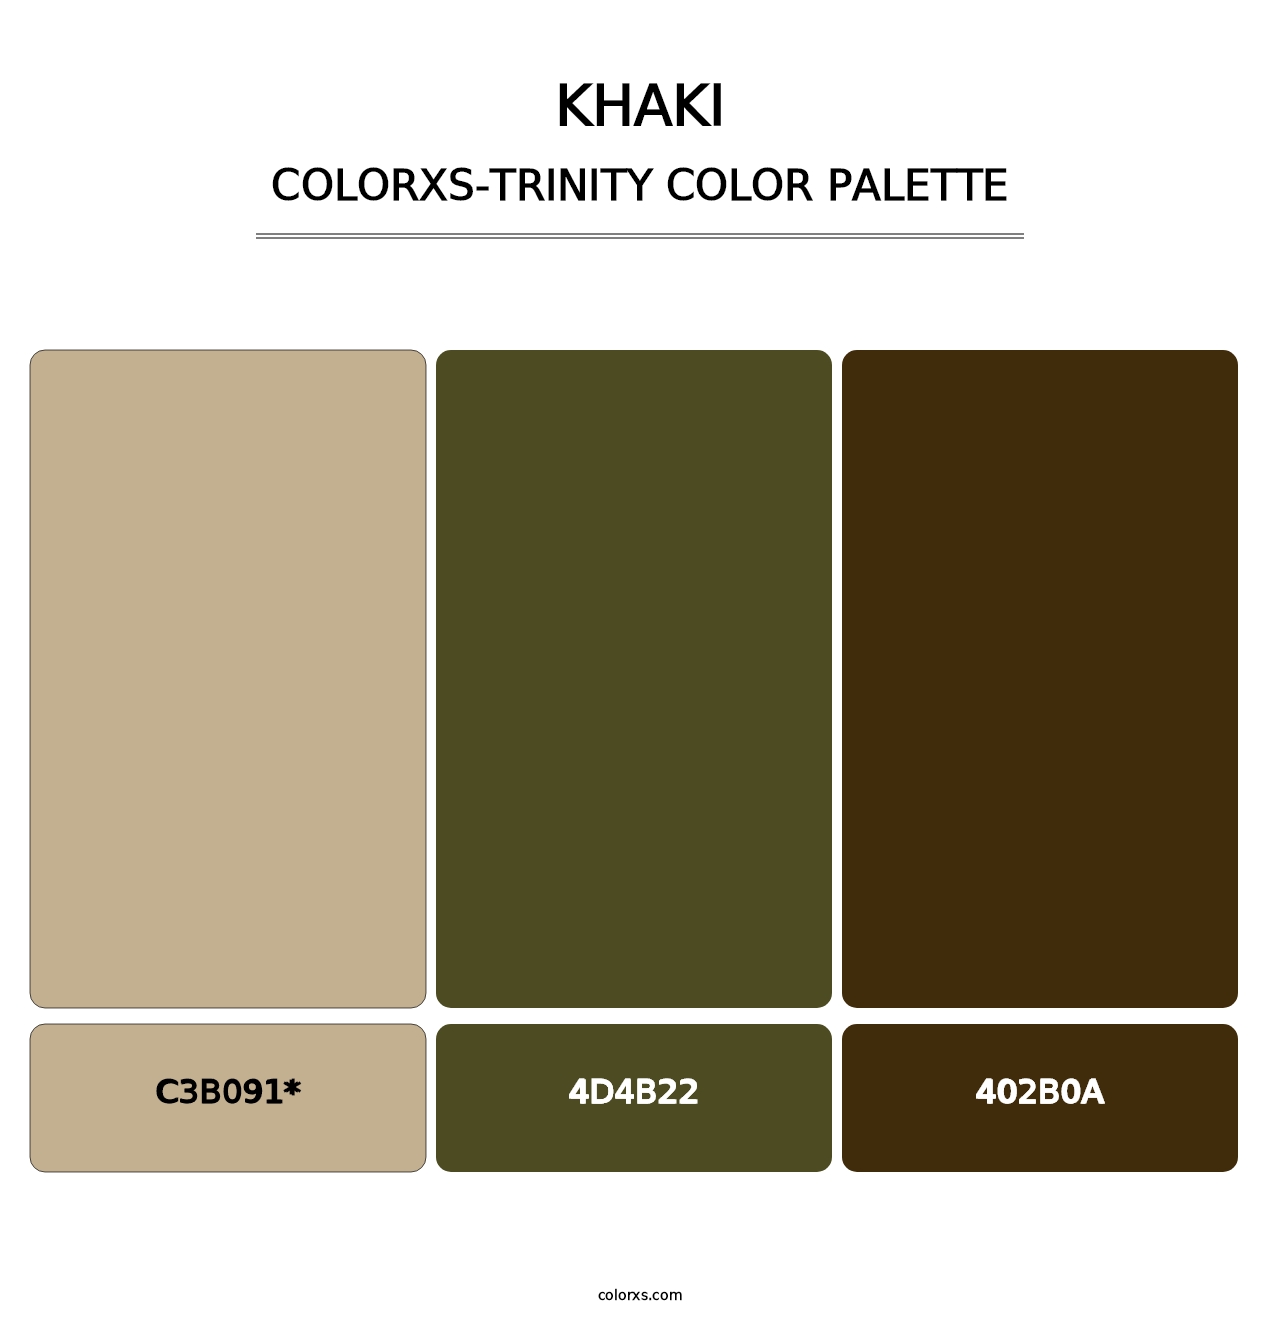 Khaki - Colorxs Trinity Palette